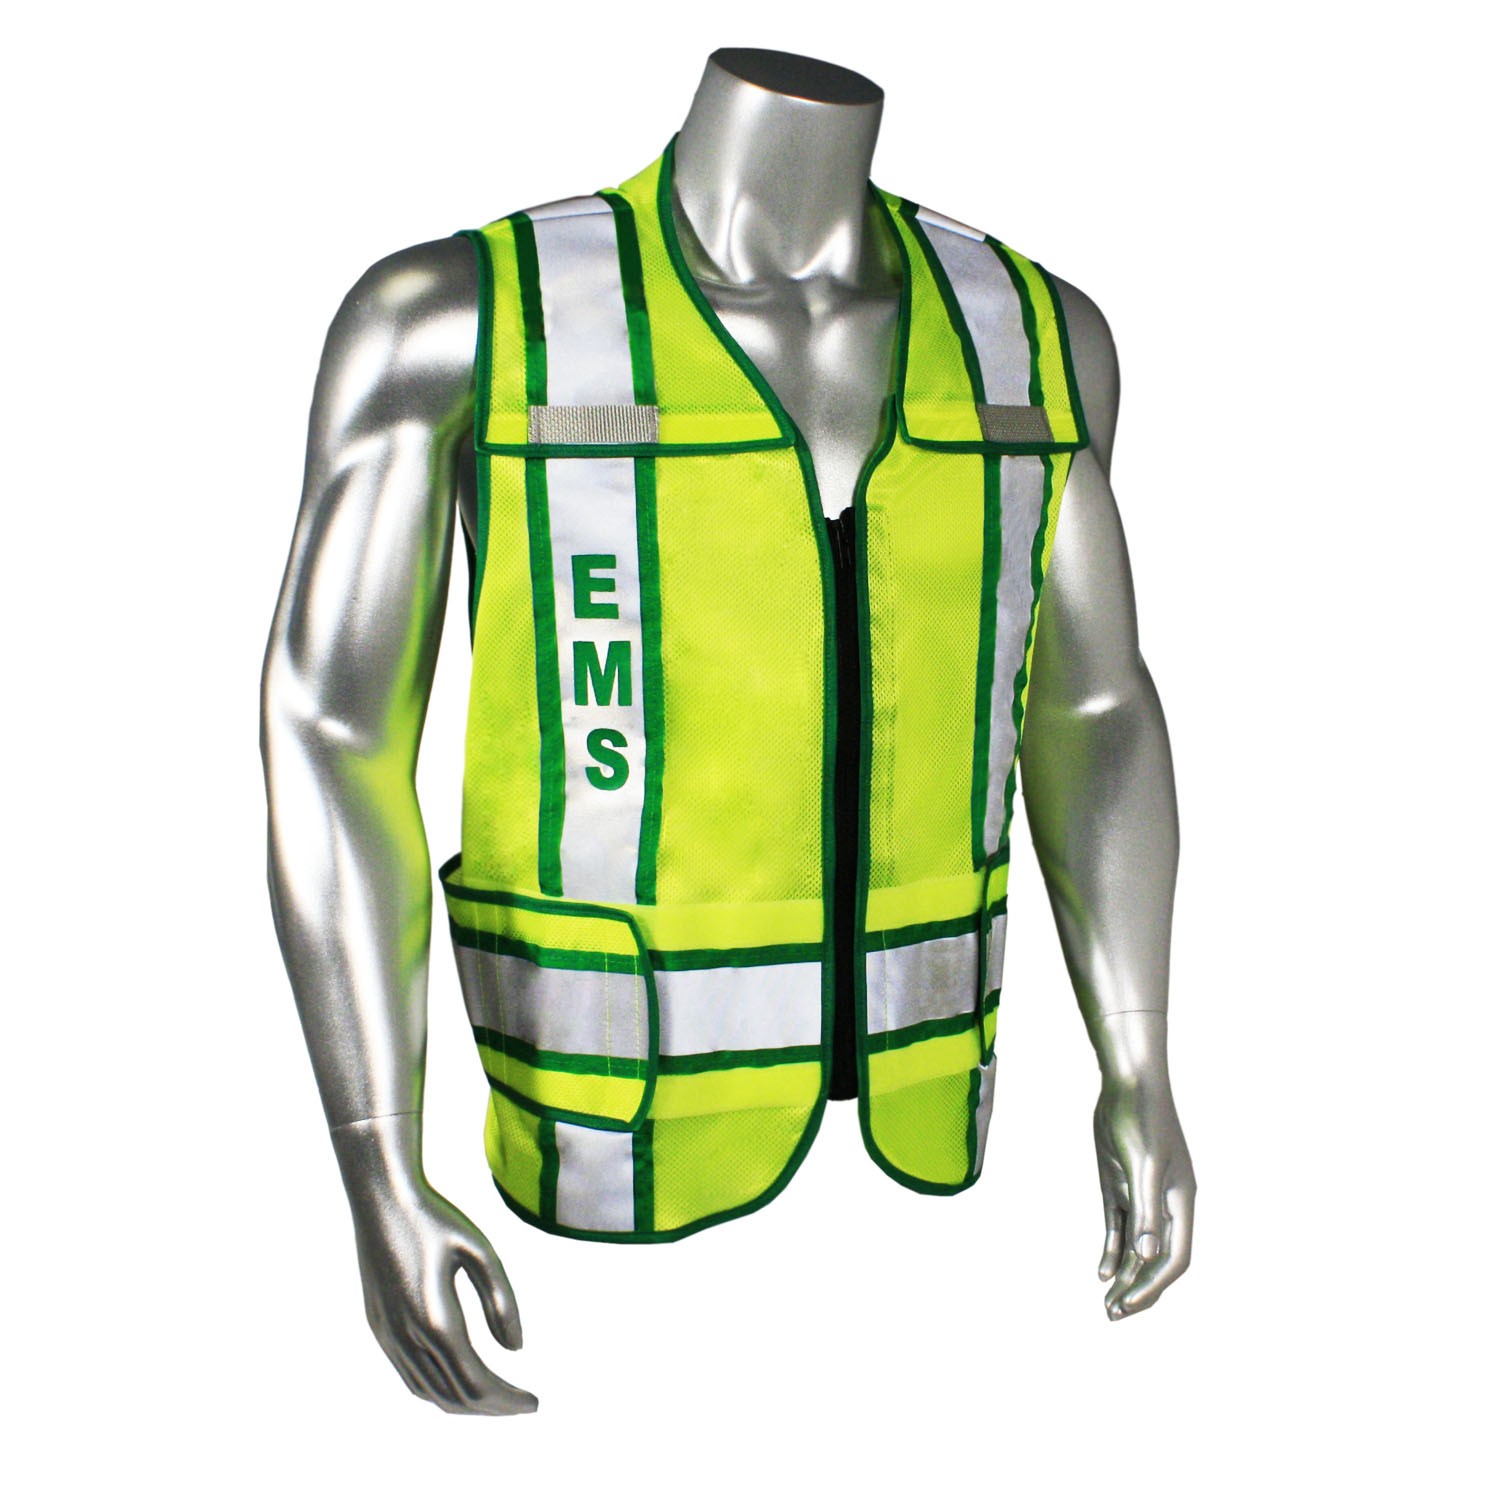 Breakaway Contrast EMS Safety Vest, Green Trim (#LHV-207-3G-EMS)